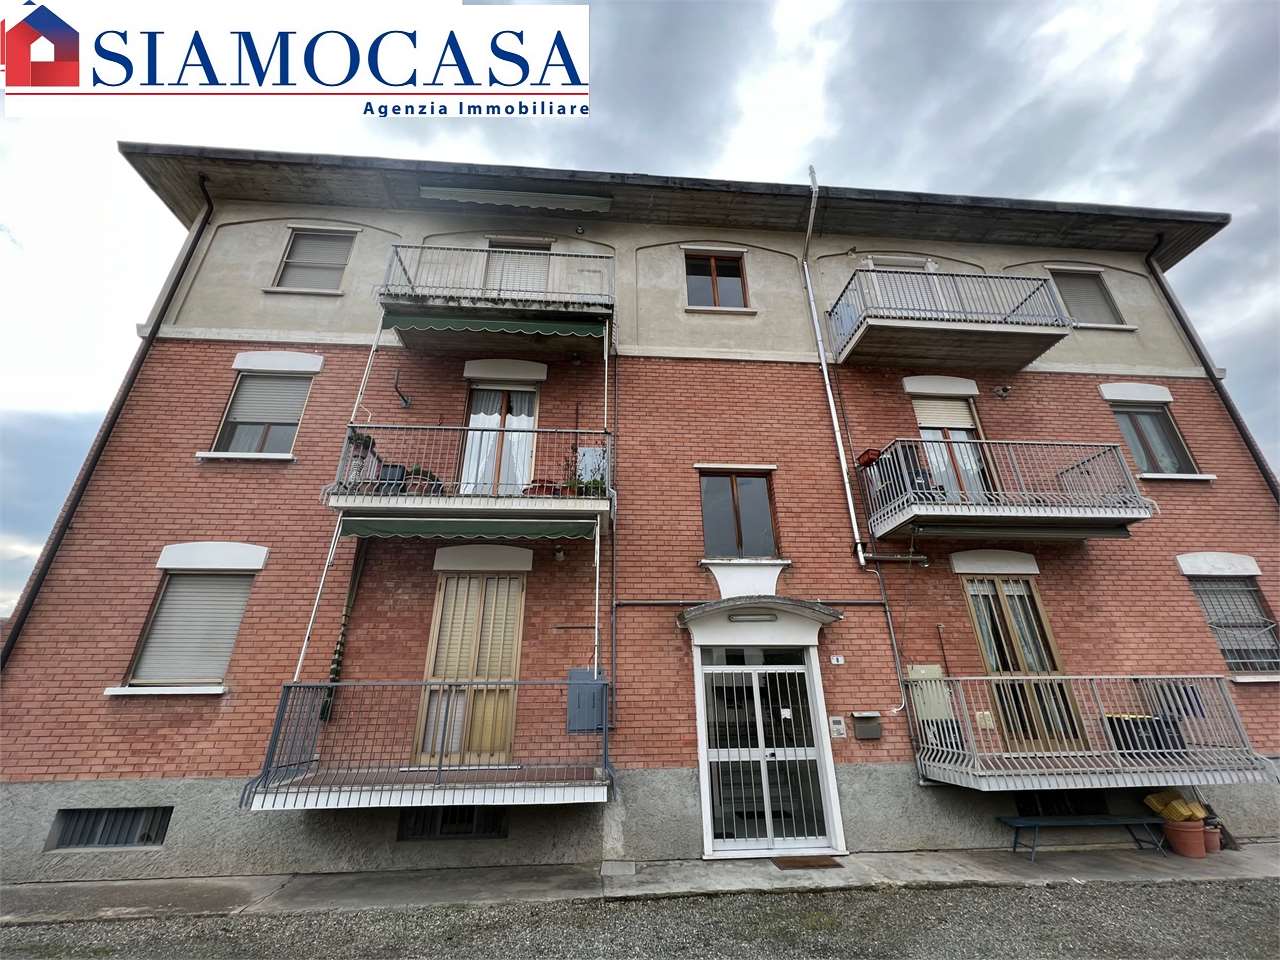 Appartamento in vendita a Bosco Marengo, 3 locali, prezzo € 59.000 | PortaleAgenzieImmobiliari.it